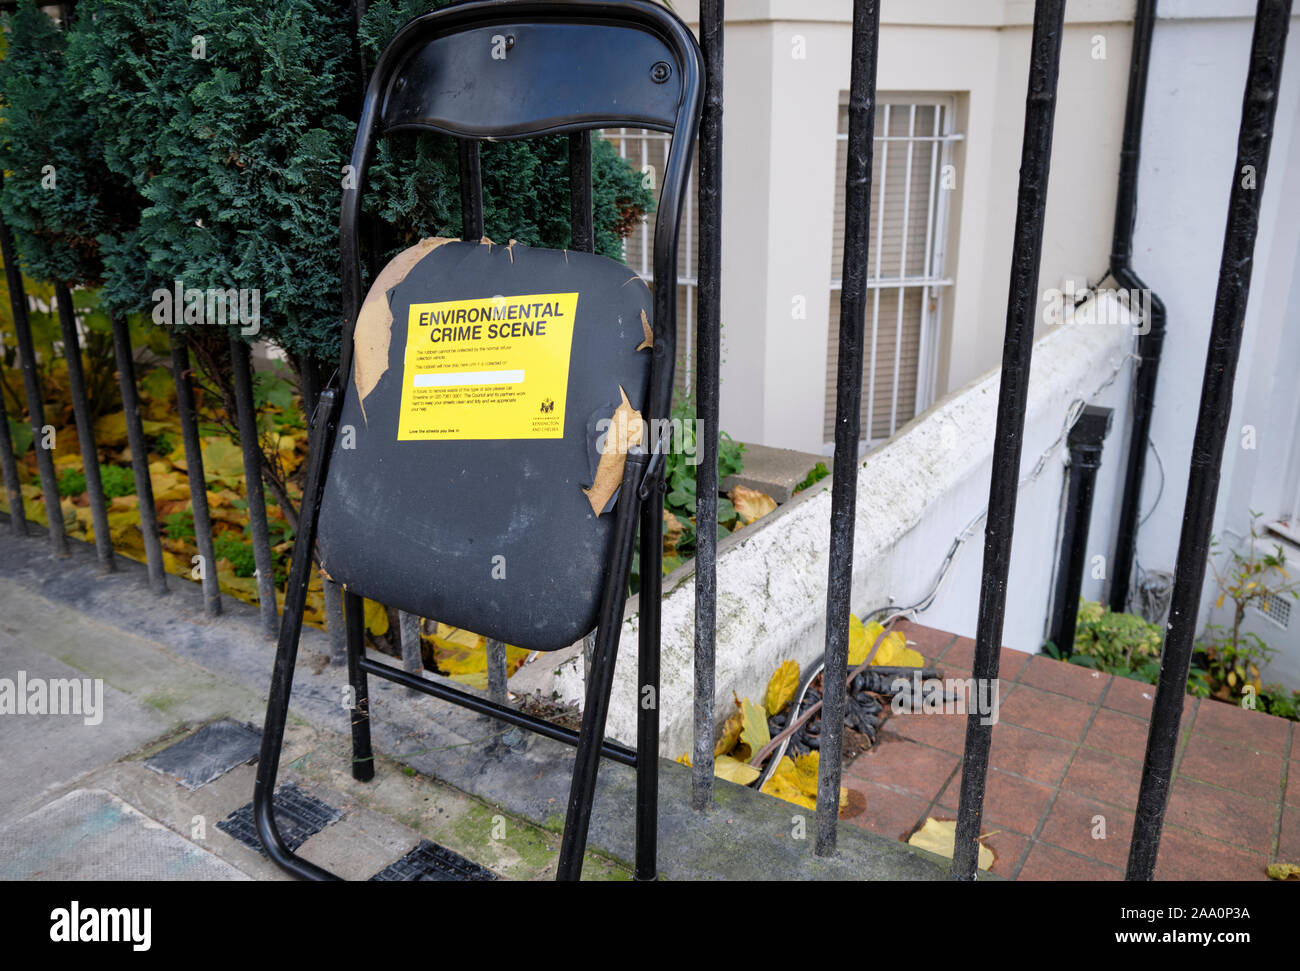 Sedia rotta per rifiuti lasciata non raccolta sul marciapiede con etichetta gialla "Environmental Crime Scene" dal distretto di Kensington e Chelsea, Foto Stock